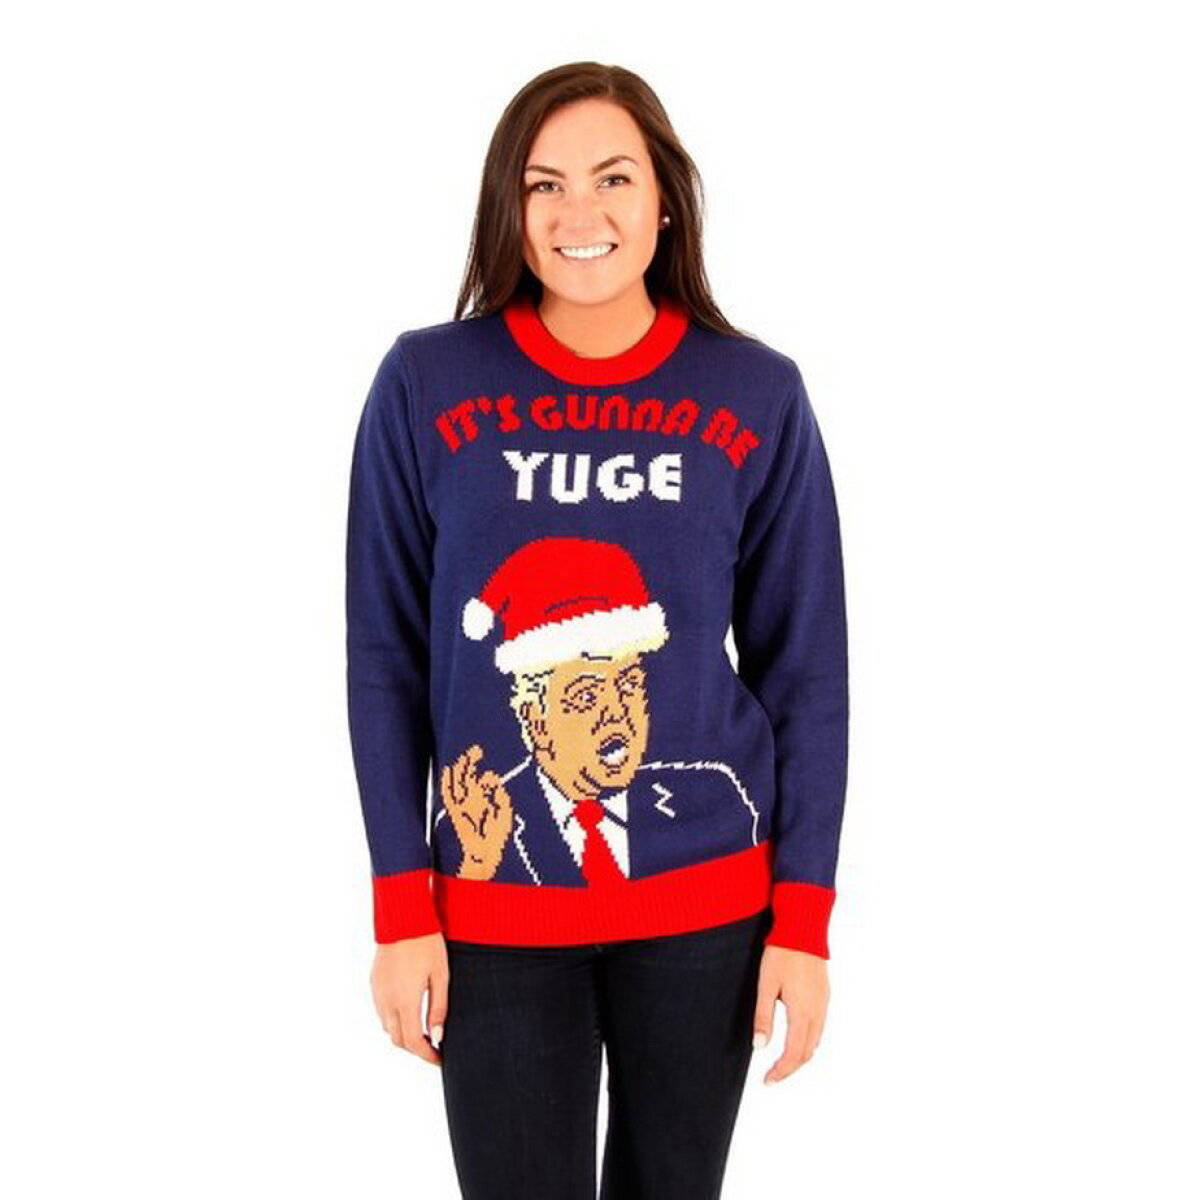 GALERIE FOTO Acestea sunt cele mai amuzante pulovere de Crăciun. Vei vrea unul cu siguranţă!